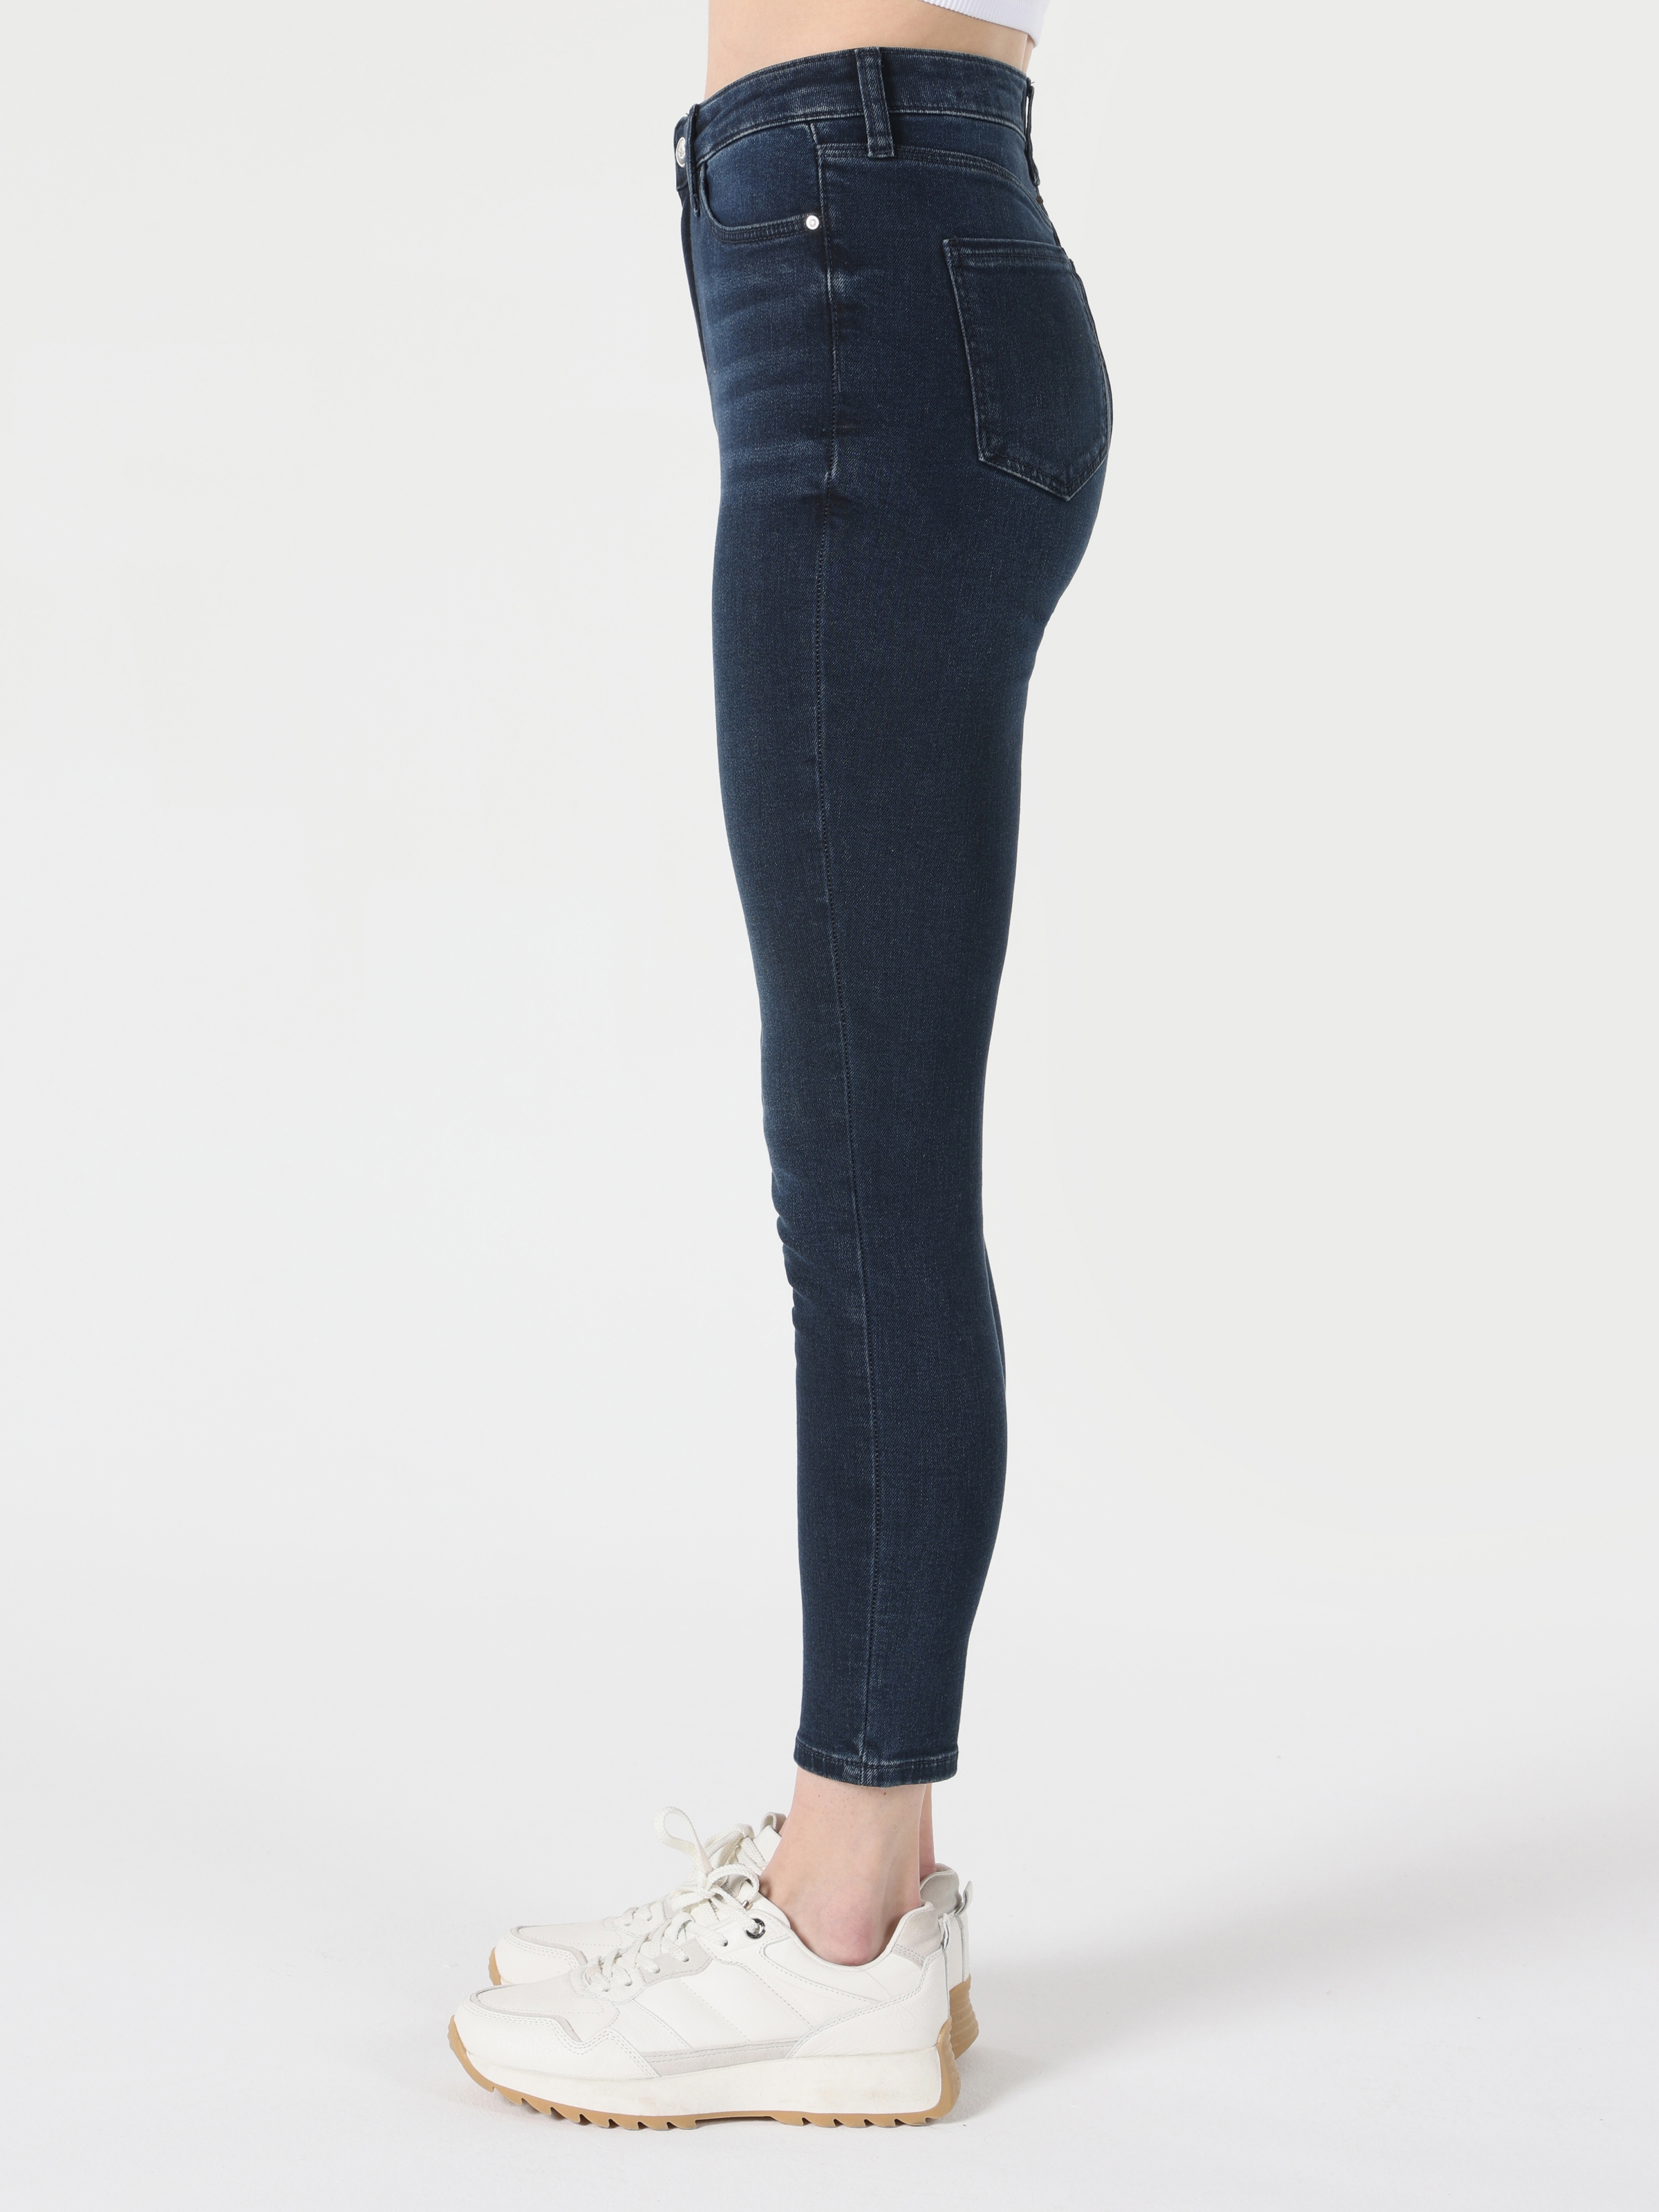 Afficher les détails de Pantalon 760 Diana Super Slim Fit Taille Haute Jambe Skinny Bleu Foncé Pour Femme